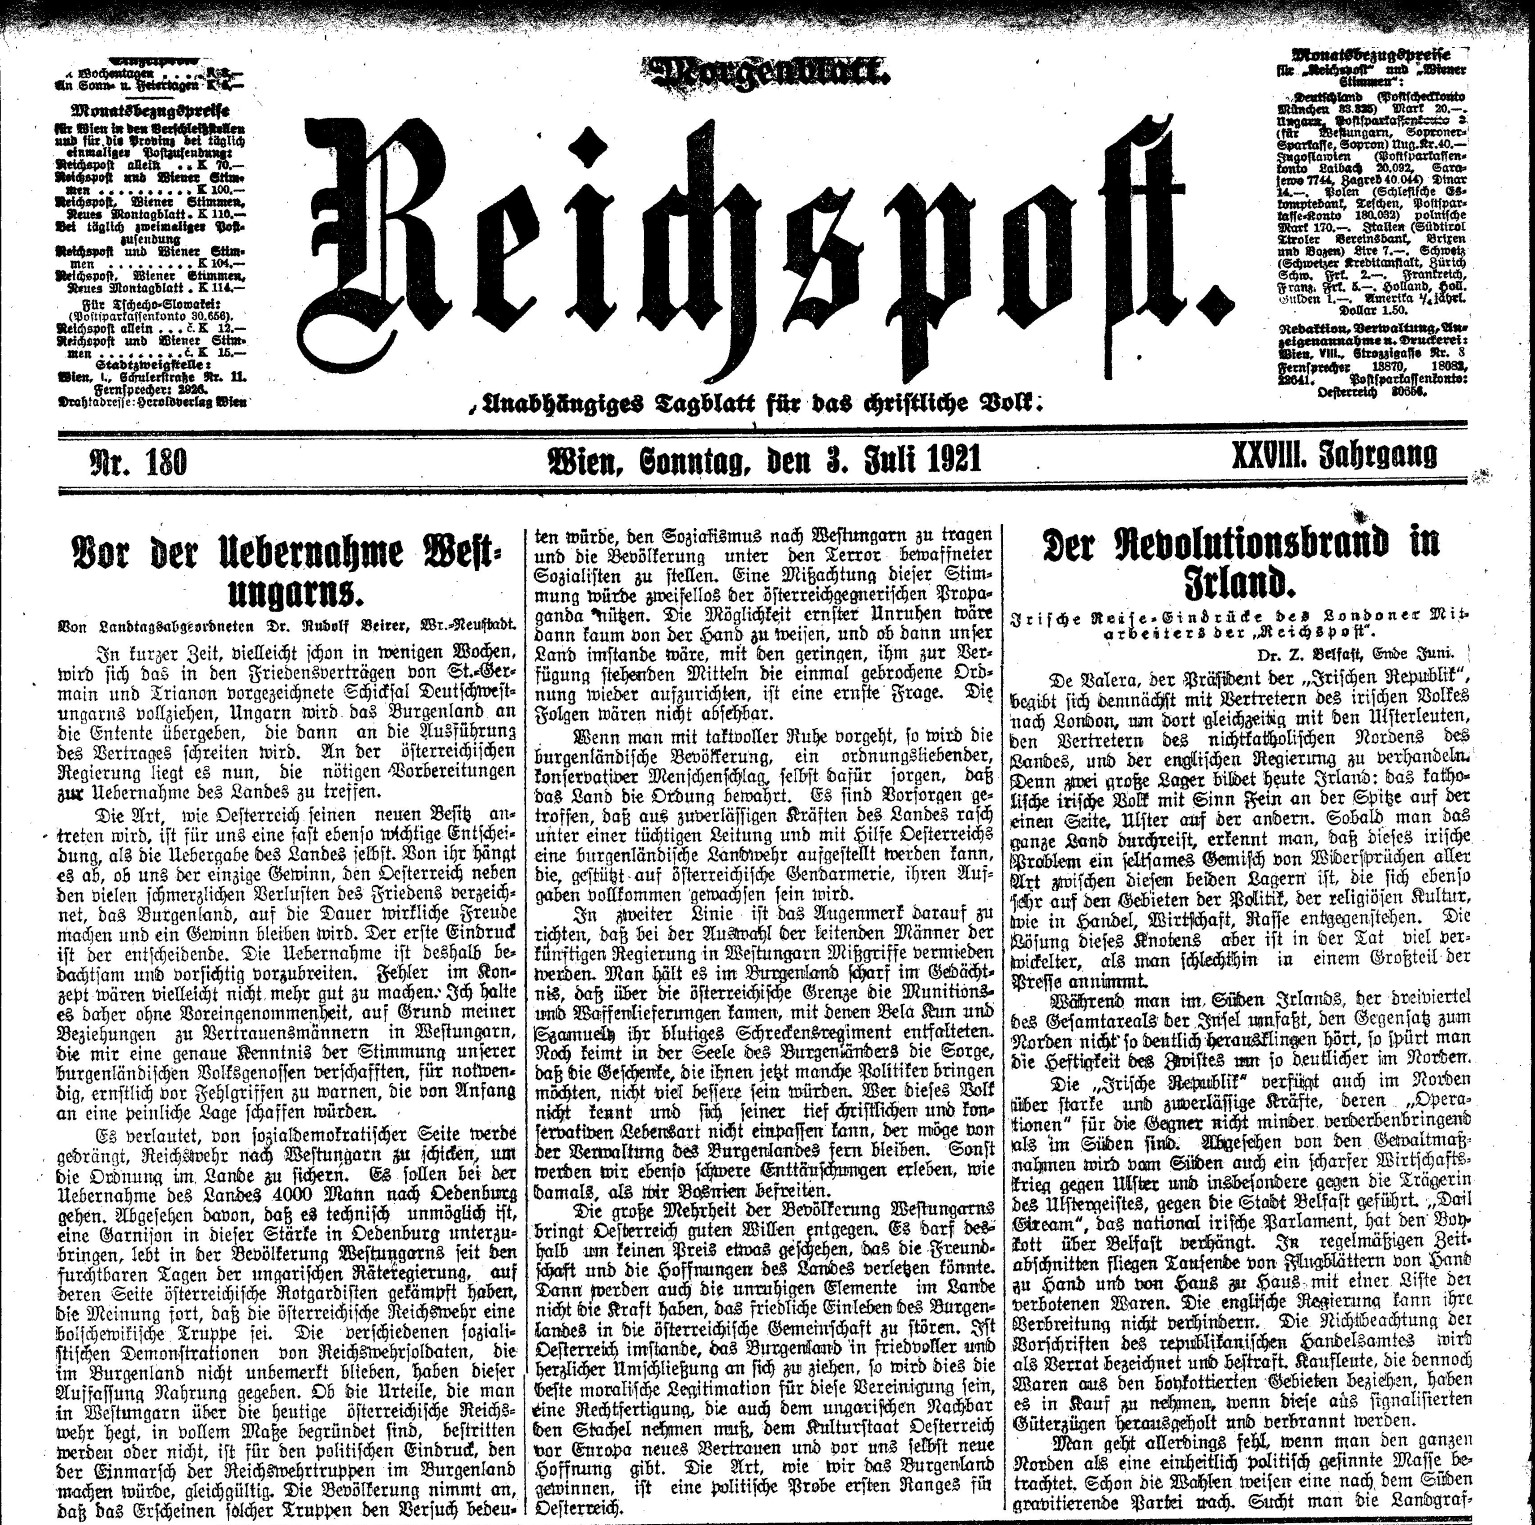 Reichspost 3. Juli 1921